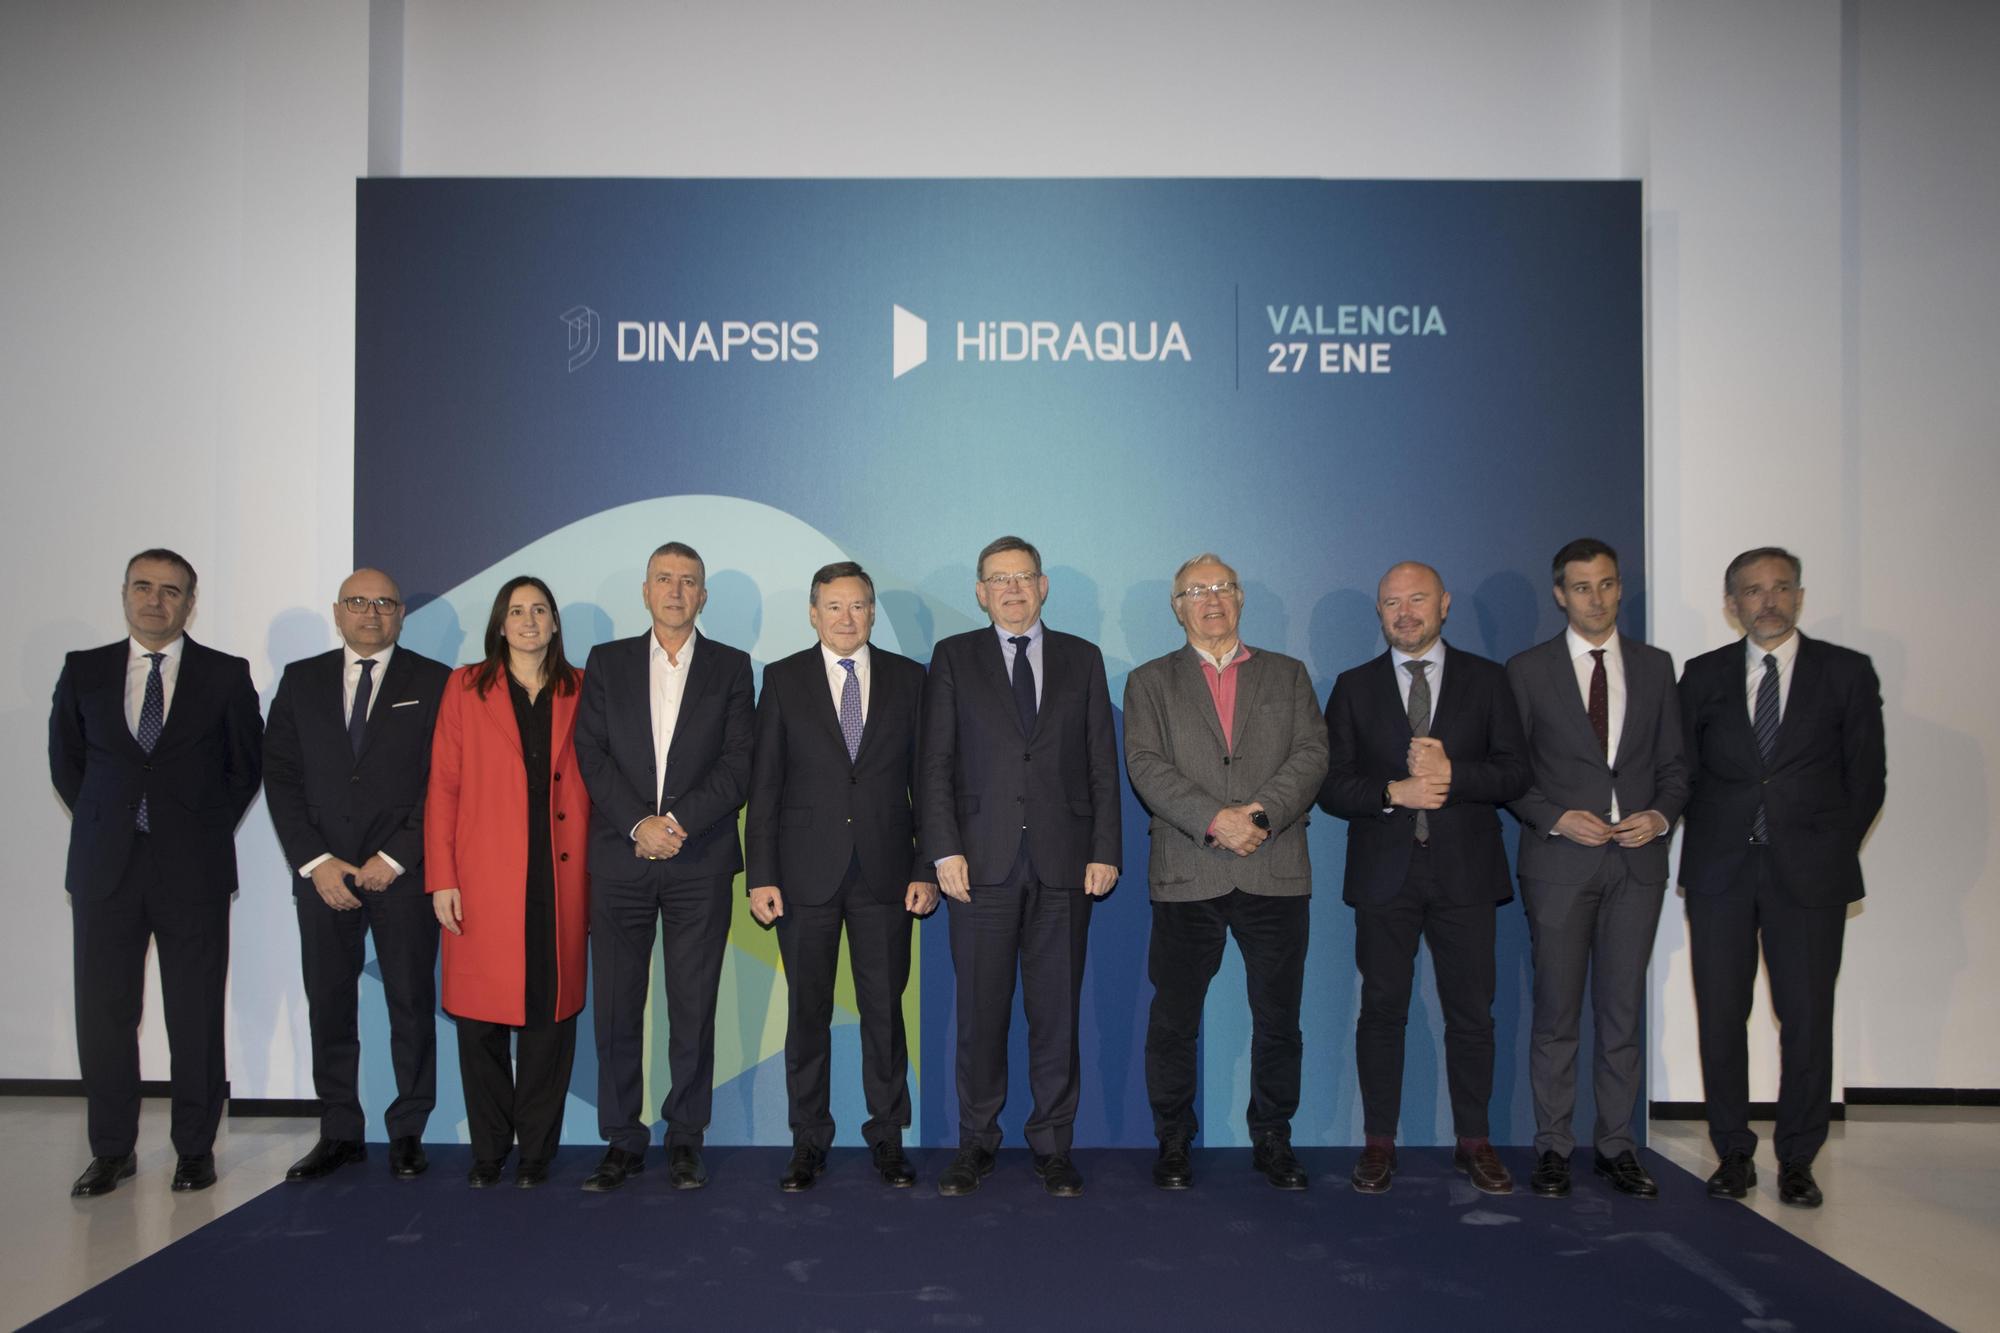 Agbar e Hidraqua inauguran el nuevo hub de innovación Dinapsis